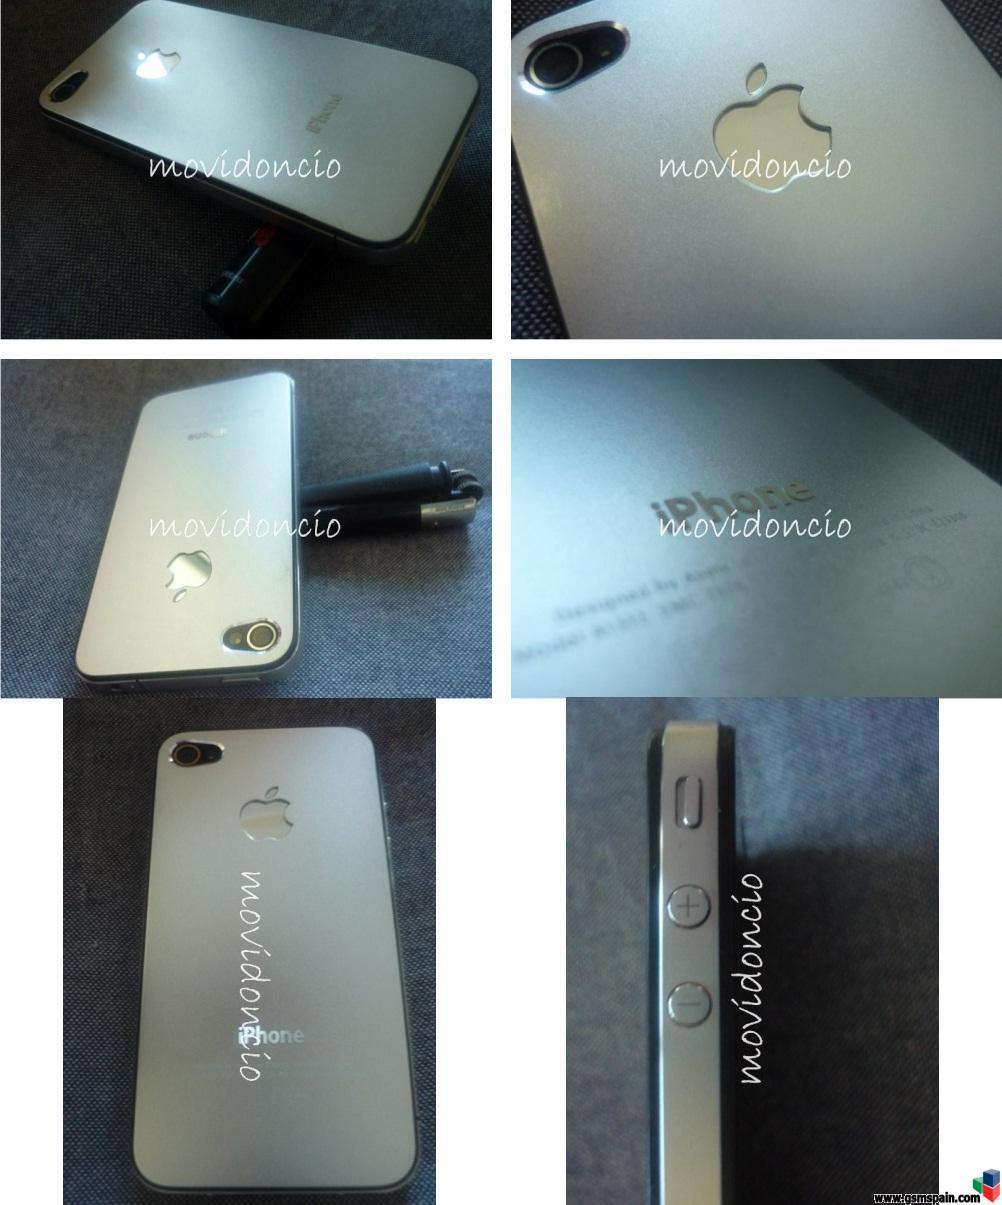 [REVIEW] iPhone 4 en Aluminio pulido, estilo iPad